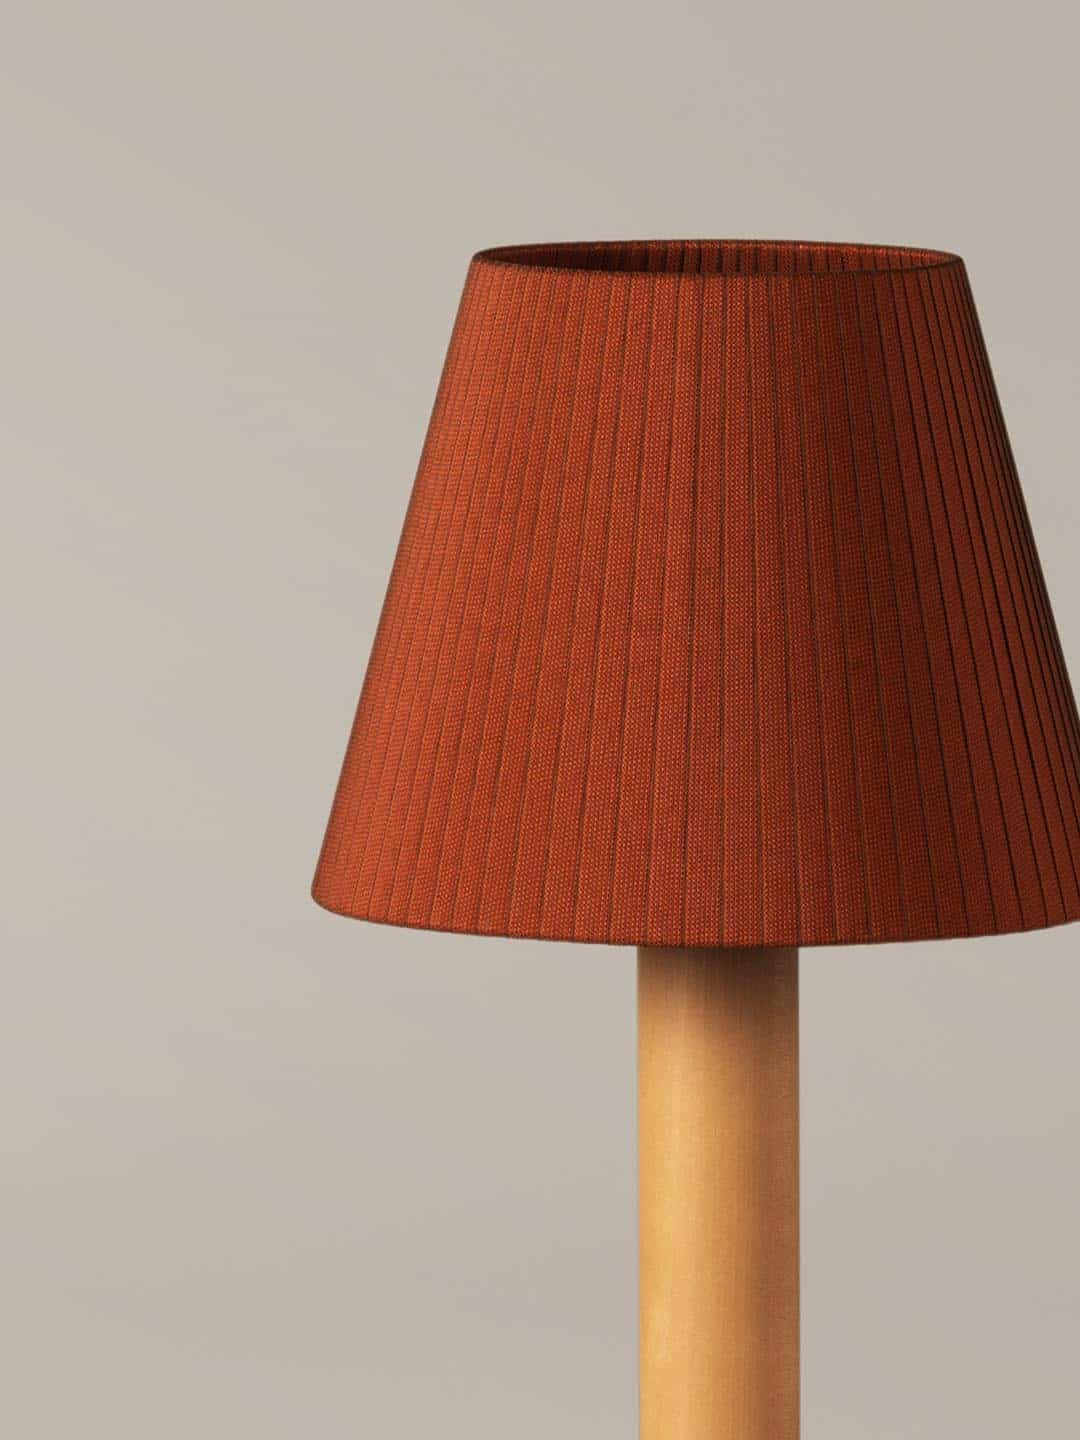 Дорогой настольная лампа Santa Cole Basica M1 для стильного интерьера